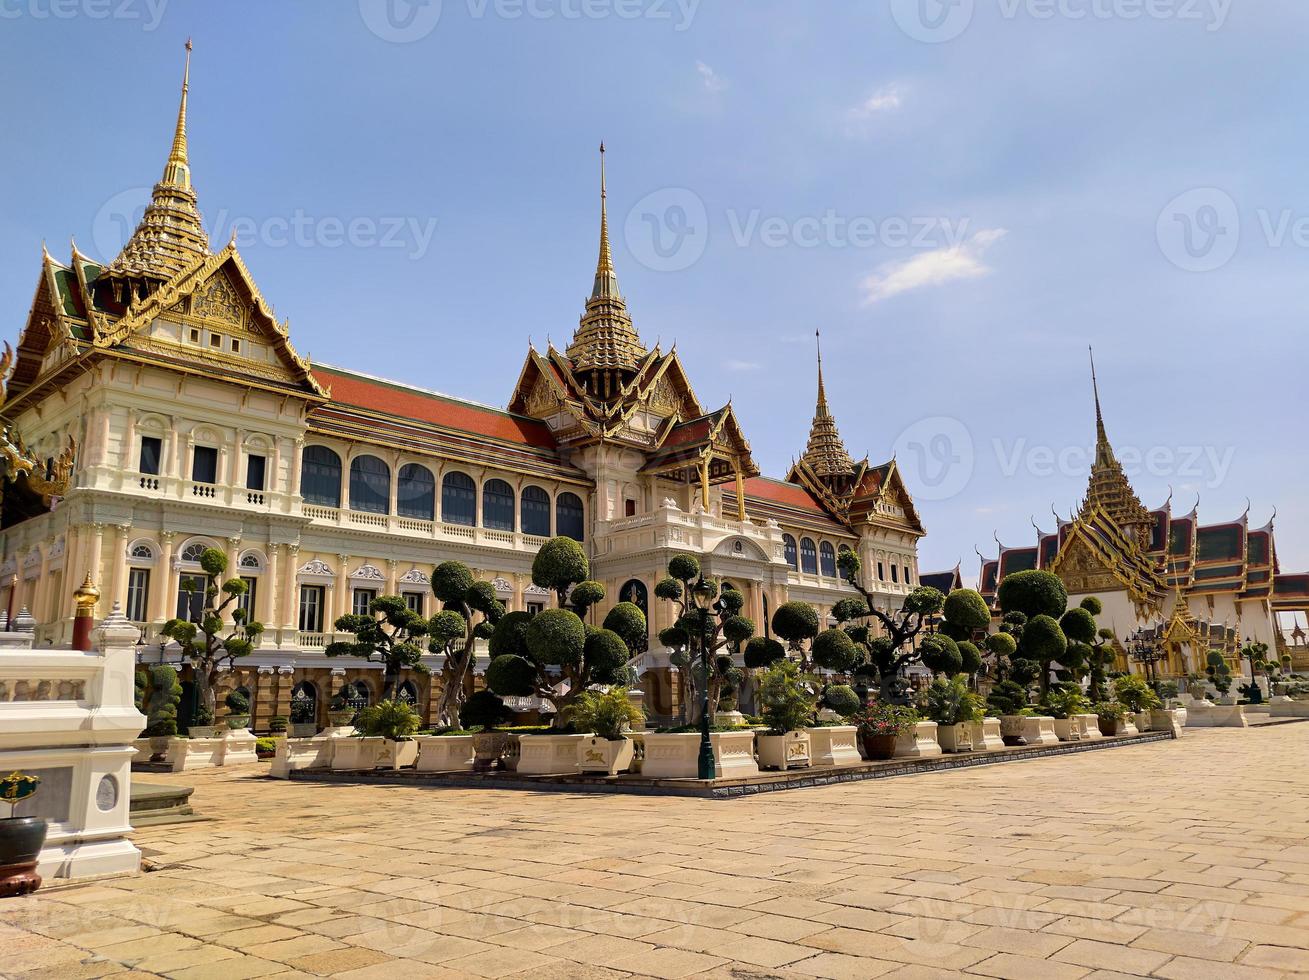 grand palace wat phra kaewtemple of the emerald buddhapunto di riferimento della thailandia in cui i turisti di tutto il mondo non mancano di visitare. foto